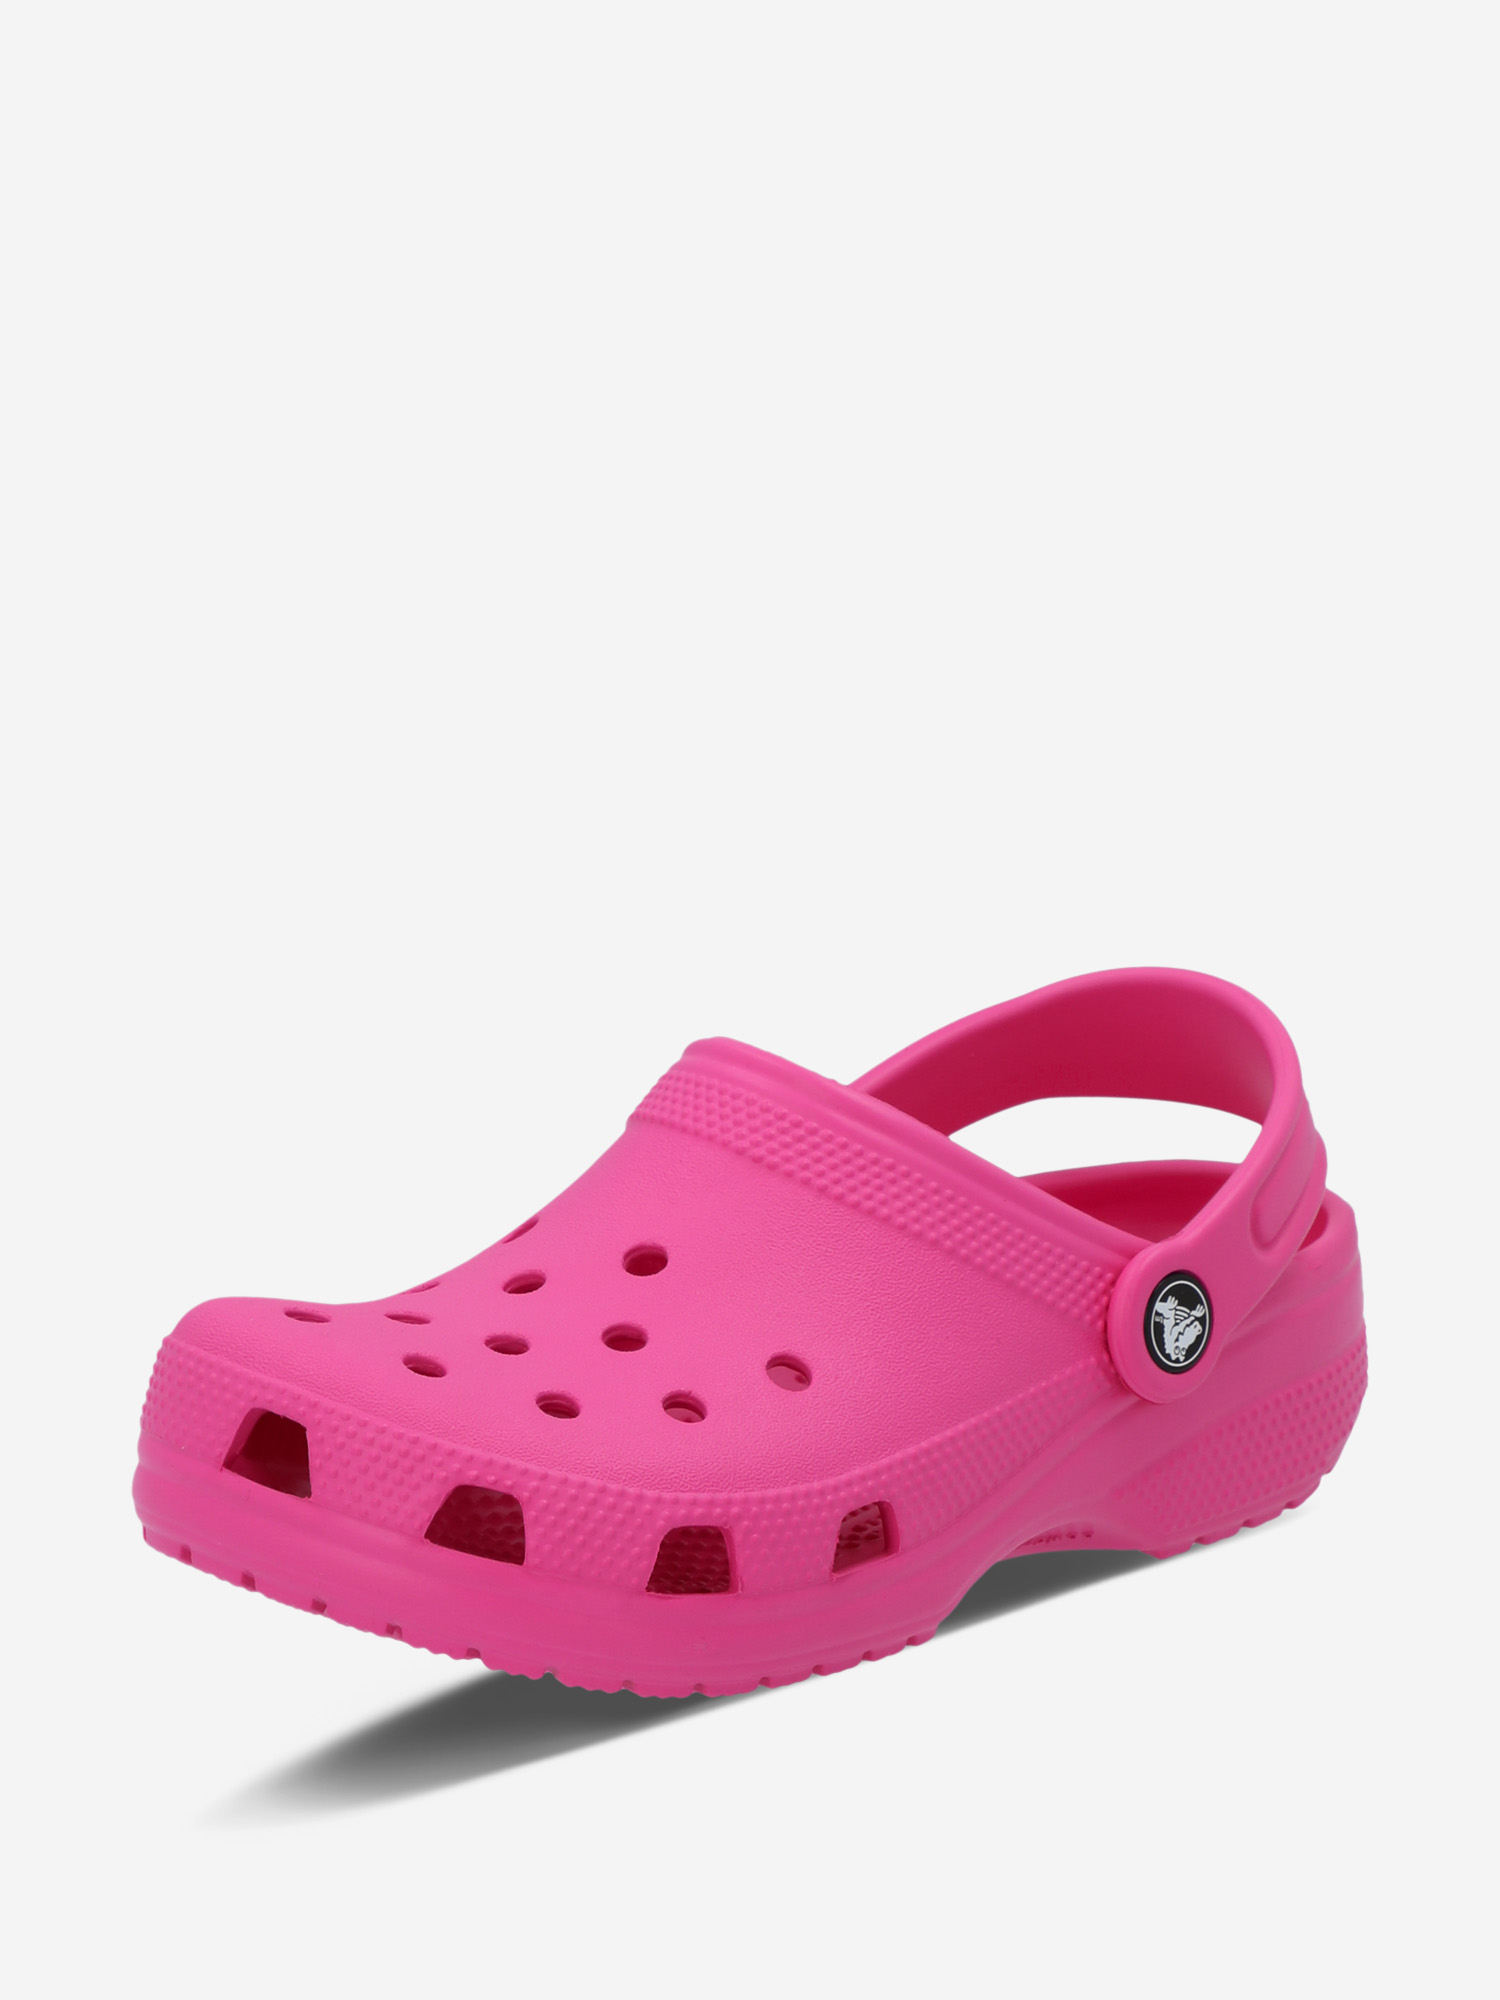 Сабо детские Crocs Classic Clog K, Розовый сапоги детские crocs розовый